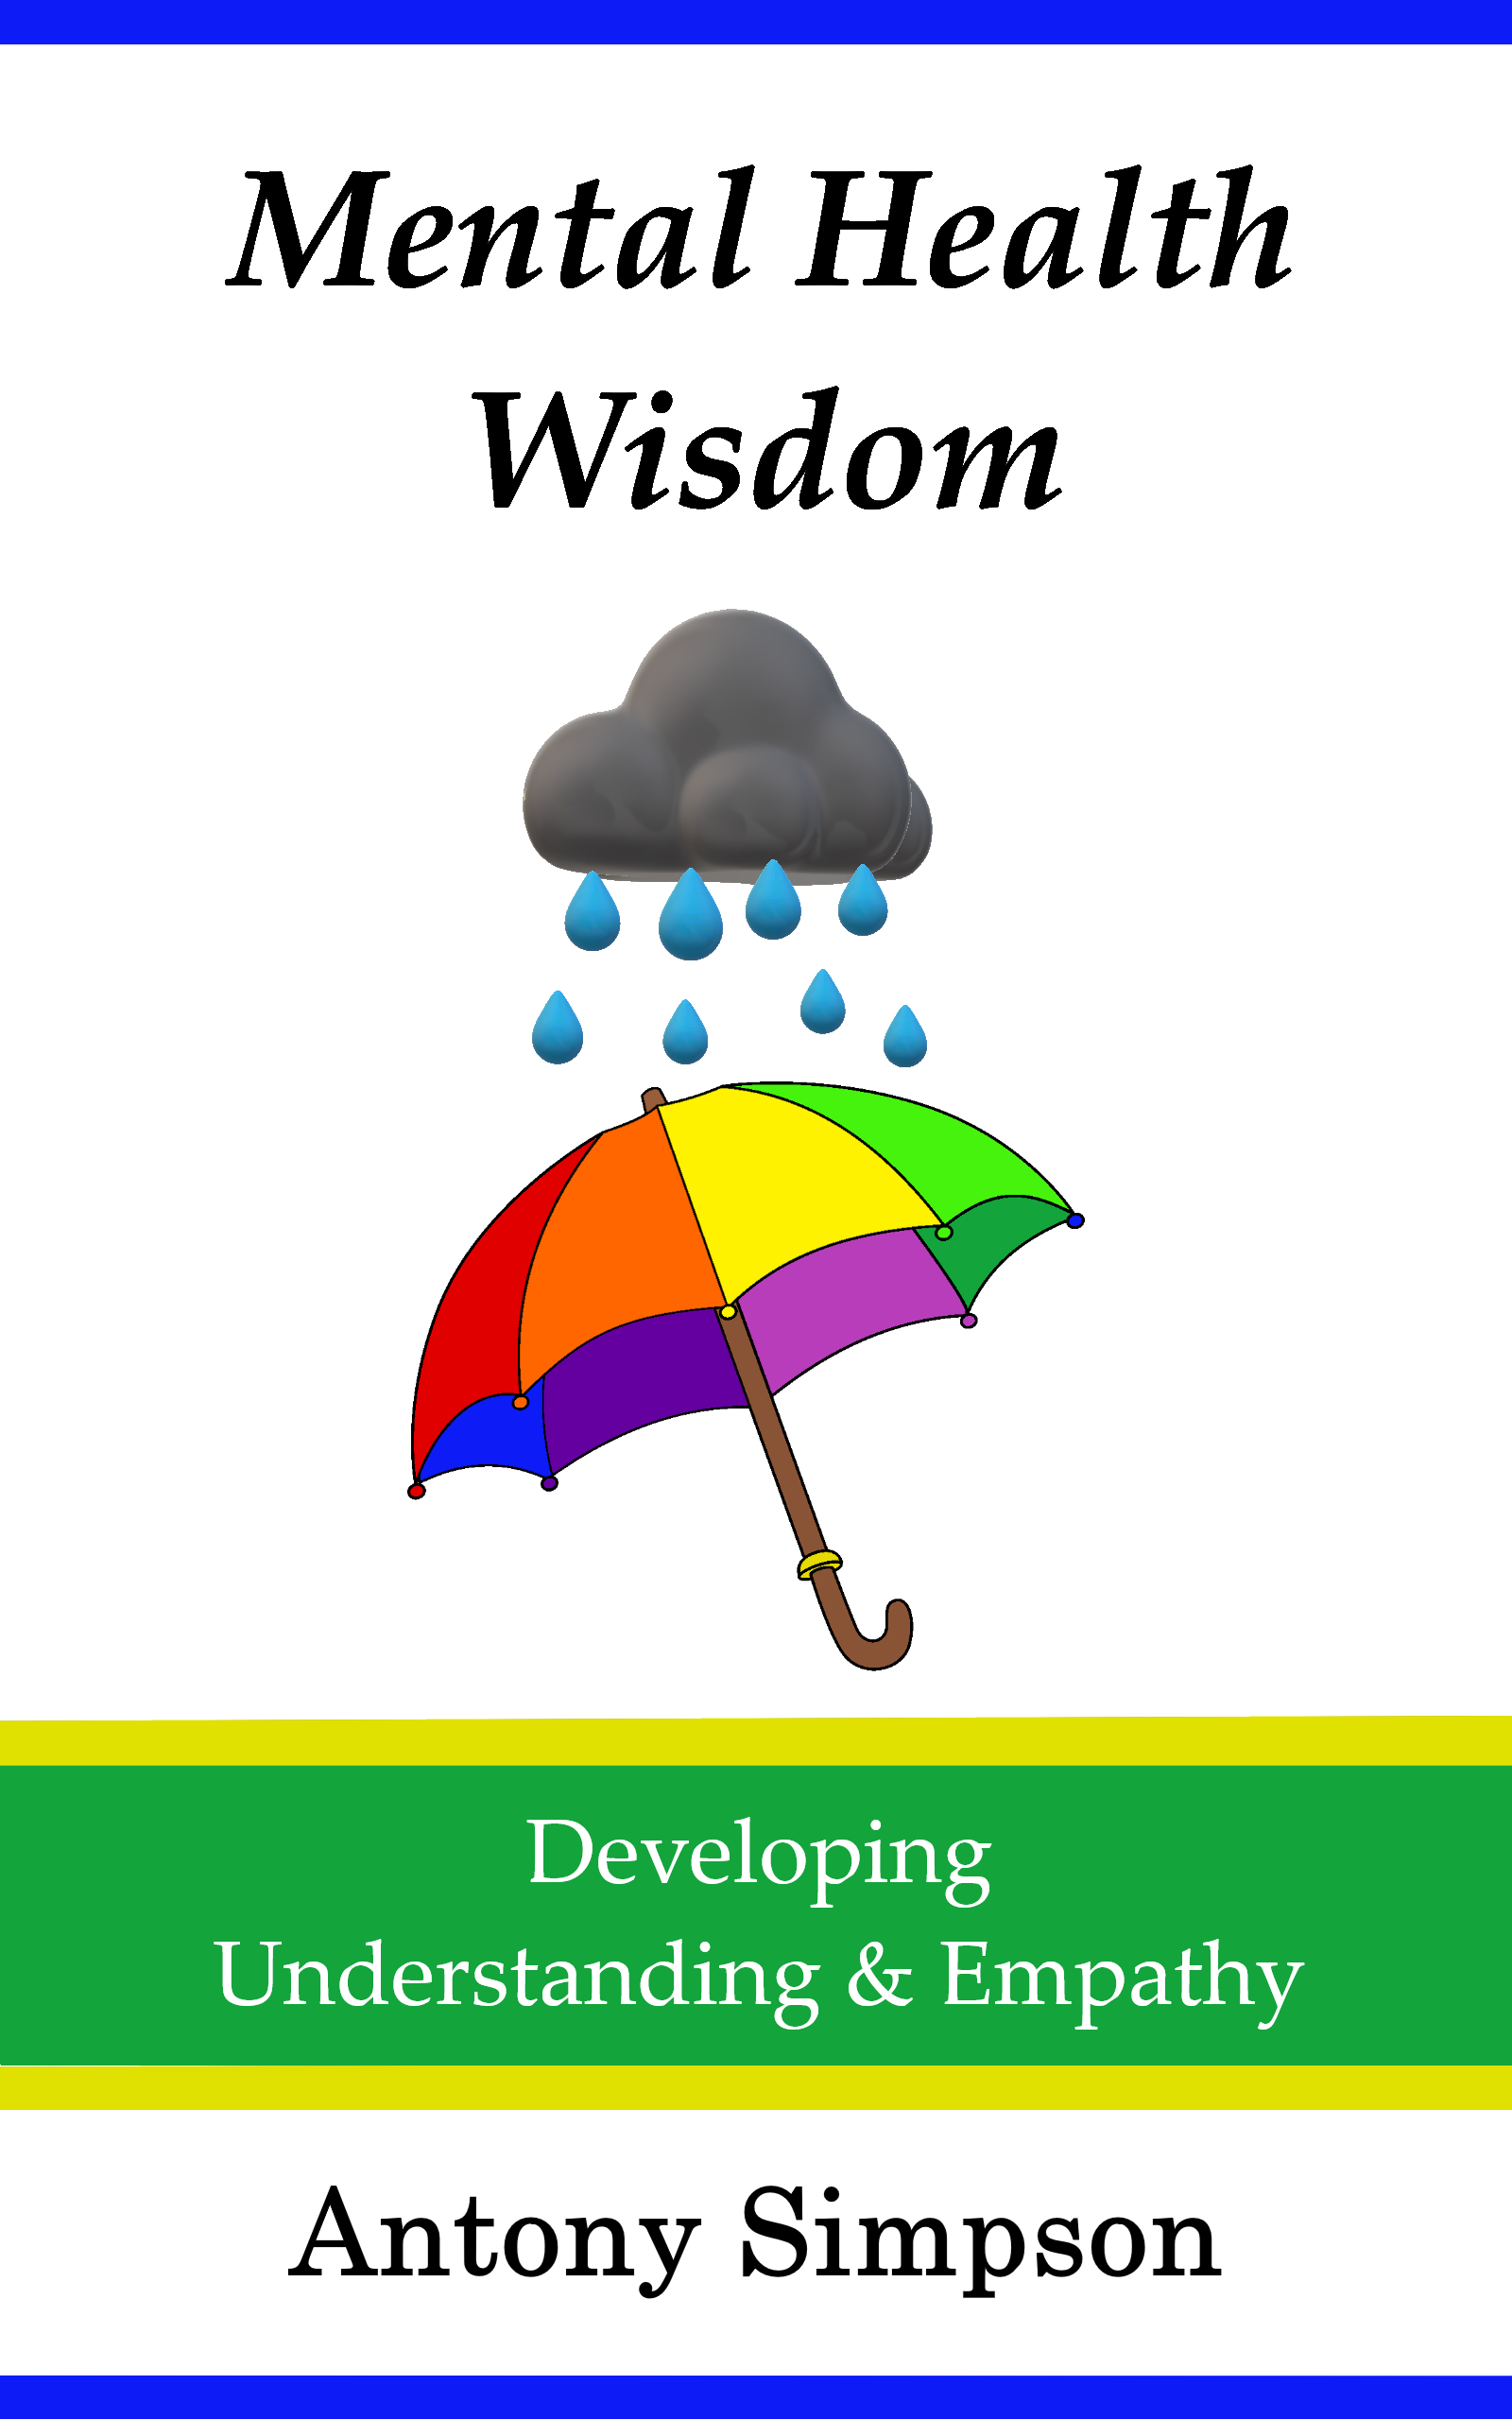 mental-health-wisdom-book-cover